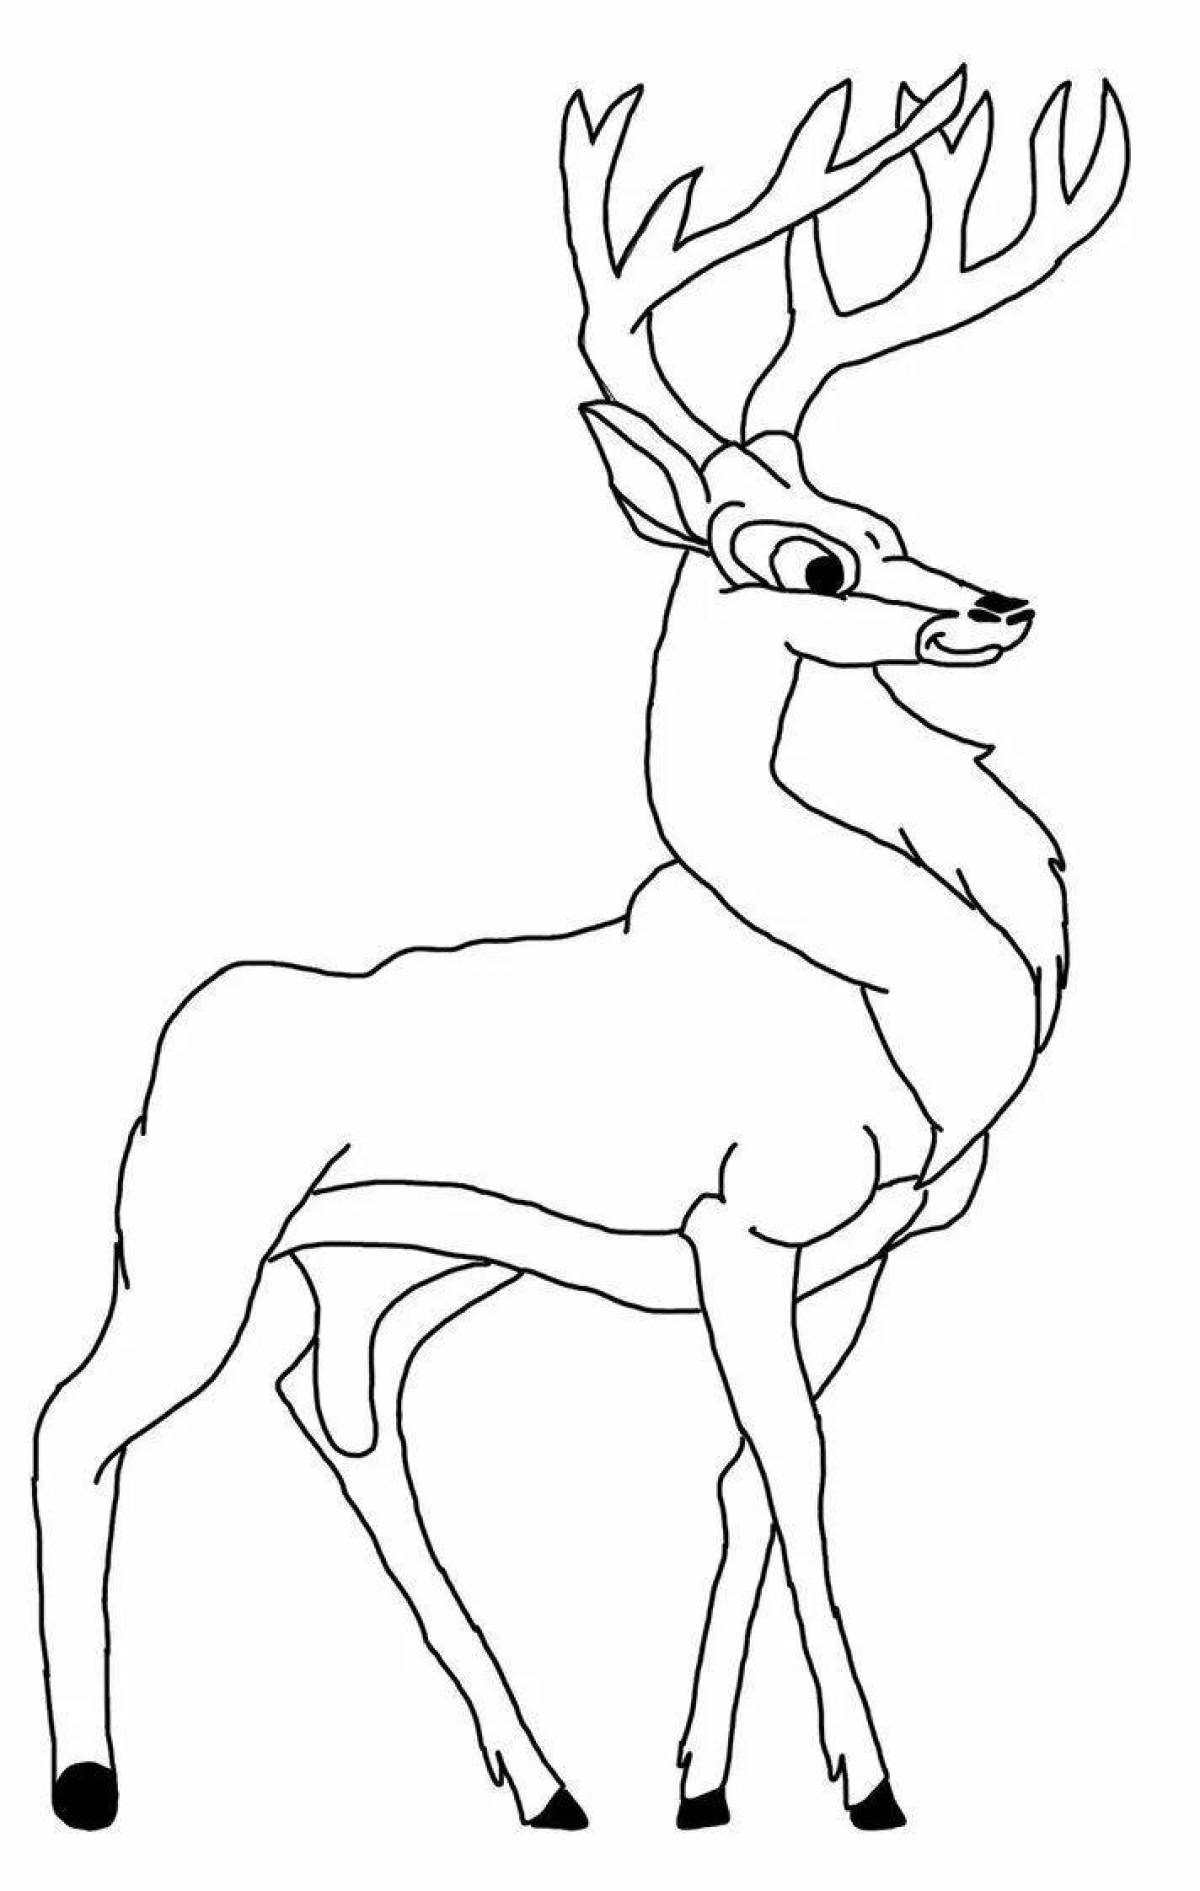 Red deer coloring page elegance